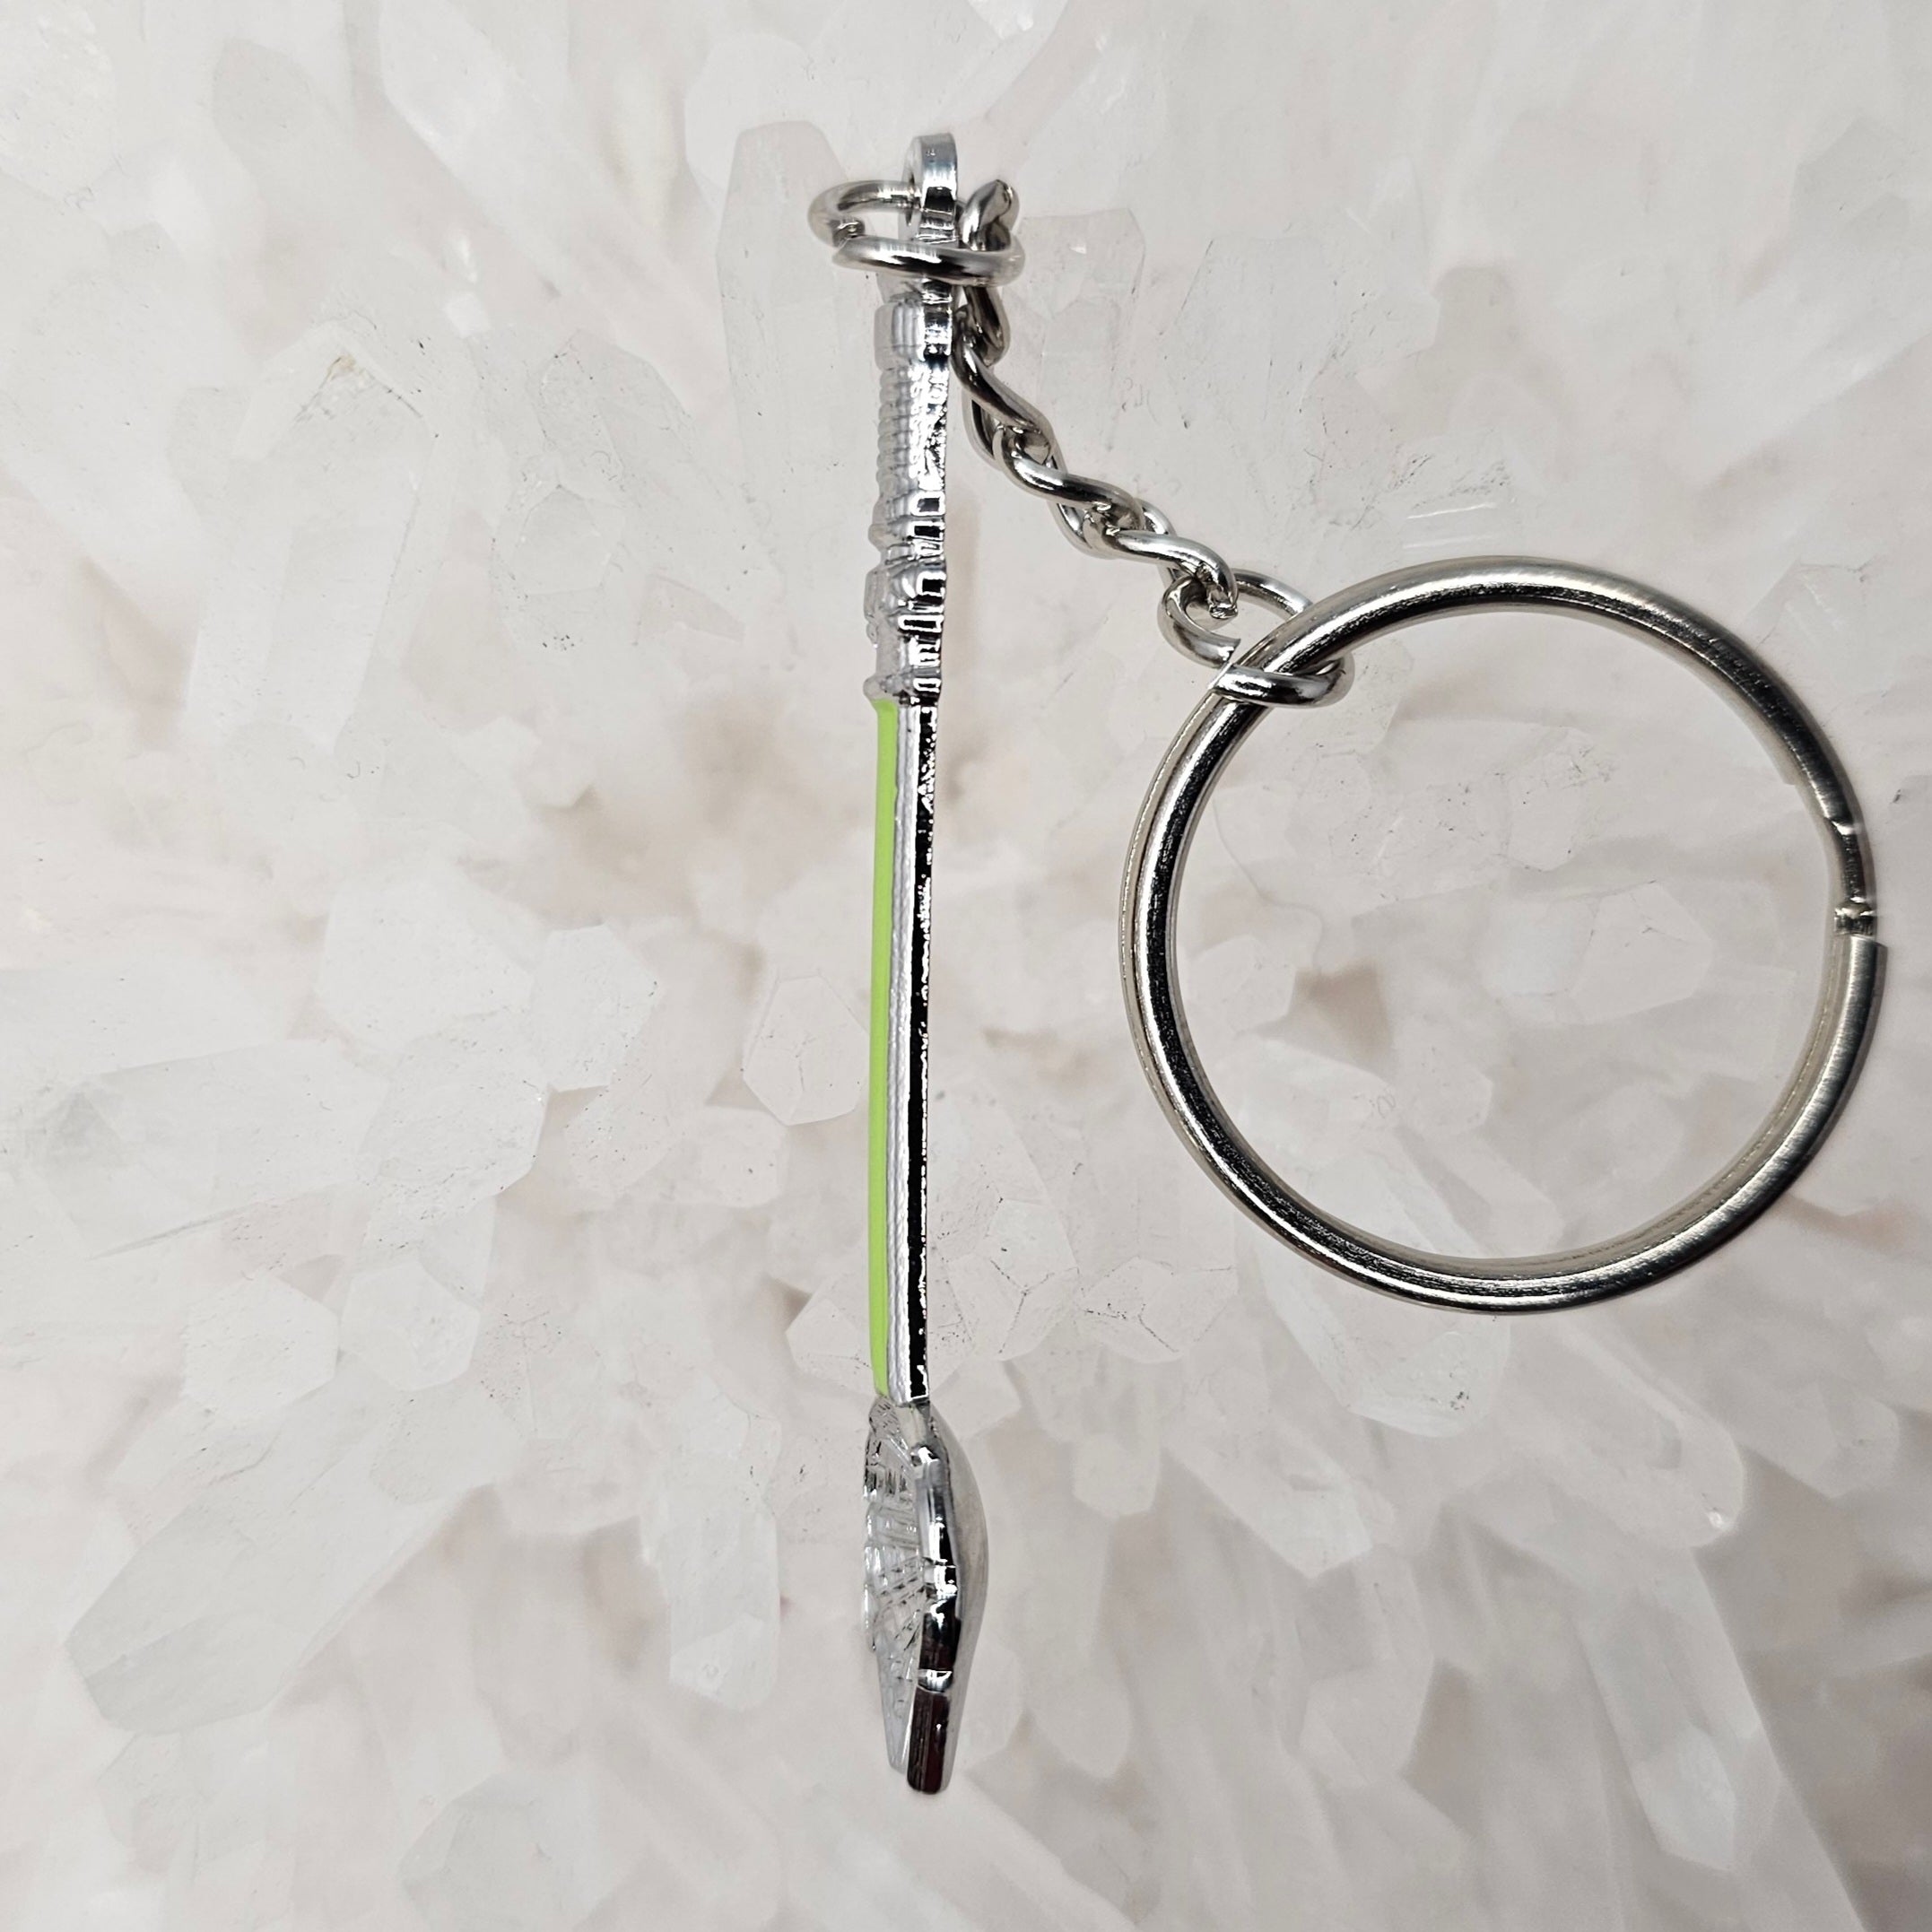 Spoonlenium Falcon Star Spoon Wars Jedi Green 3D Metal Mini Spoon Keychains Key-Chain Key Chains